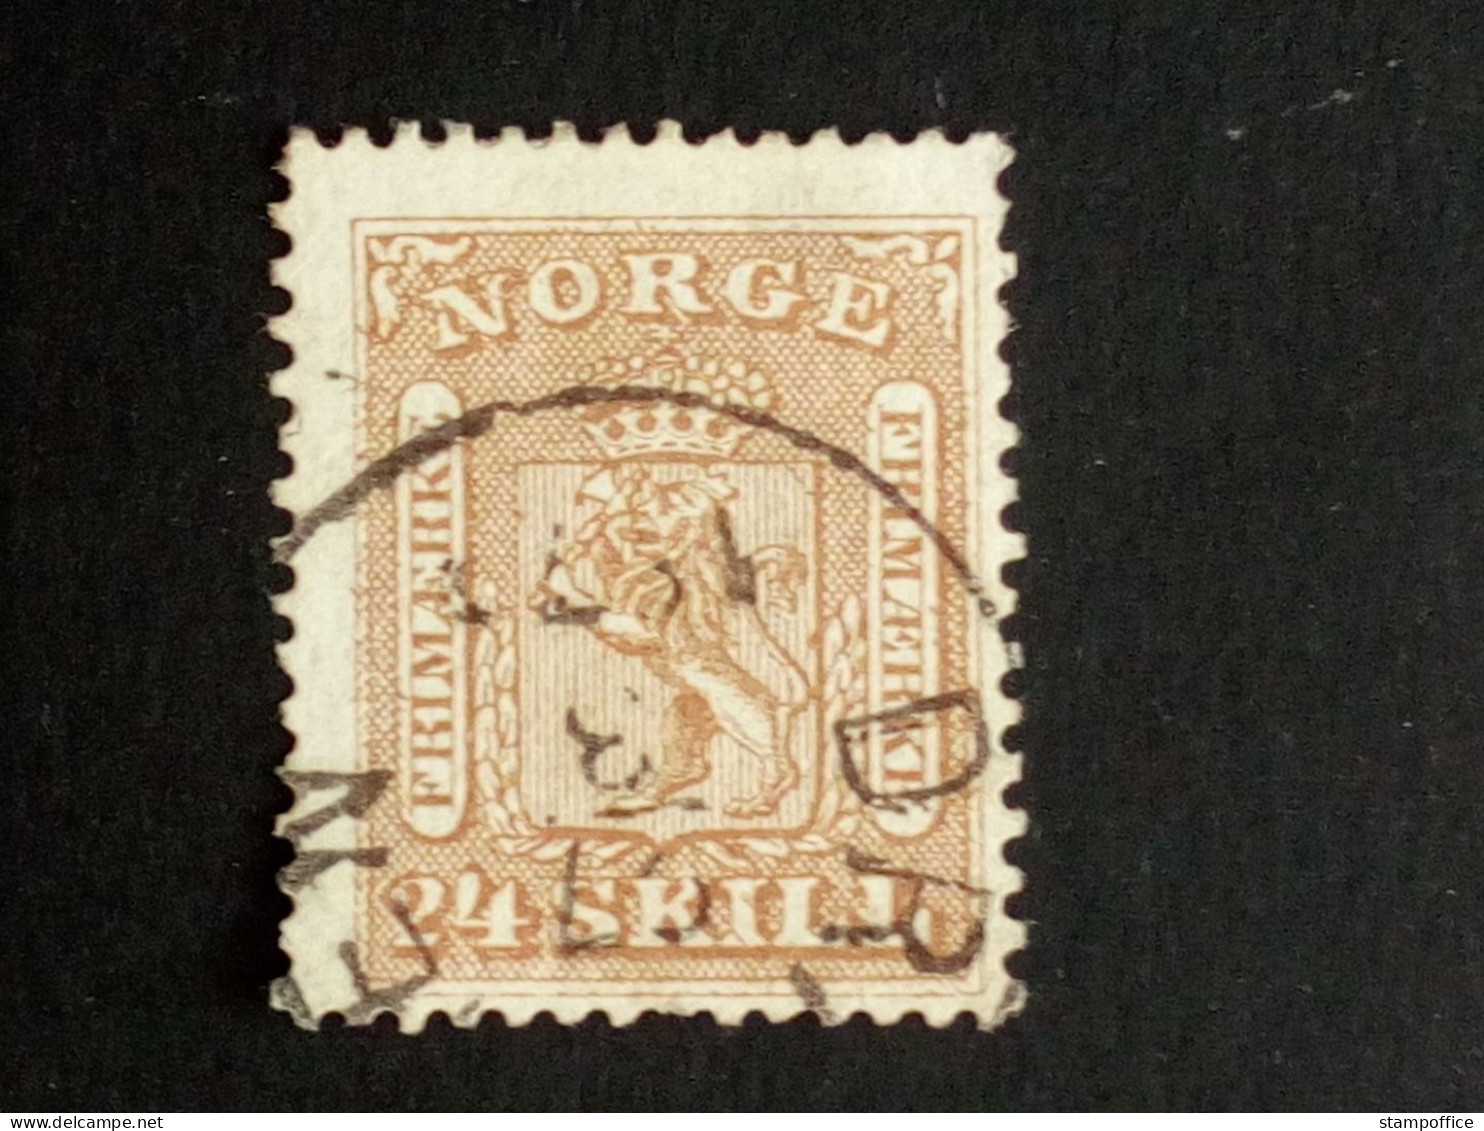 NORWEGEN MI-NR. 10 GESTEMPELT(USED) WAPPEN 1863 - Used Stamps